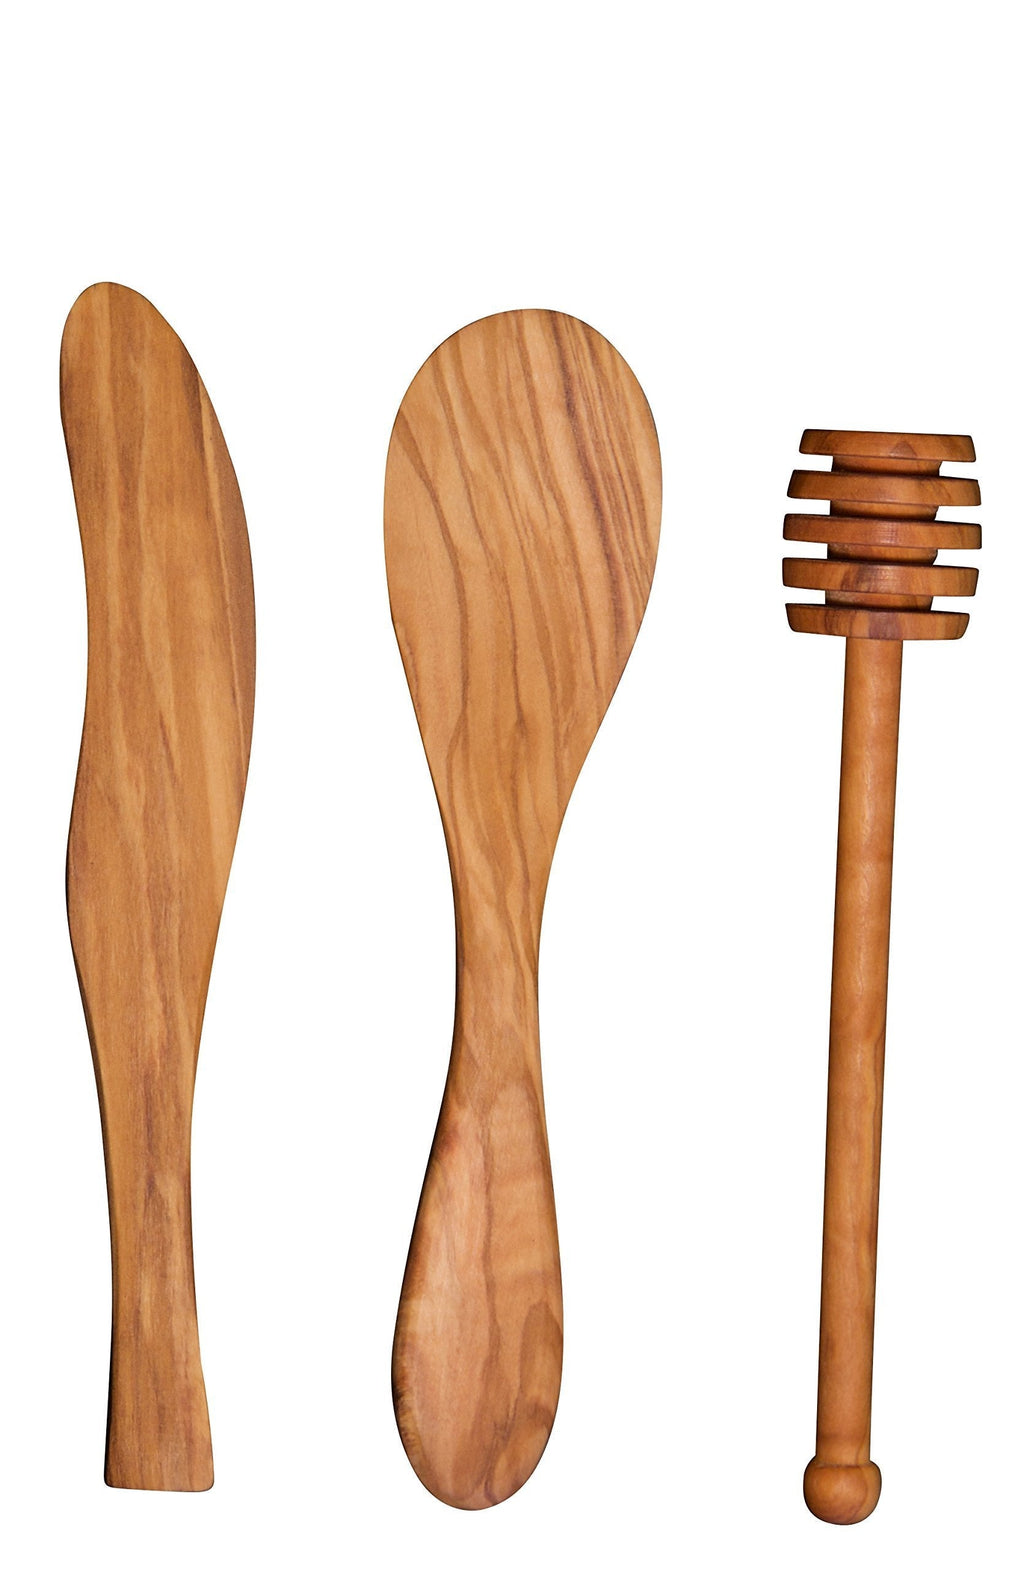  [AUSTRALIA] - Scanwood Olive Wood Spreader Spoon Dipper set Bar Set 7"